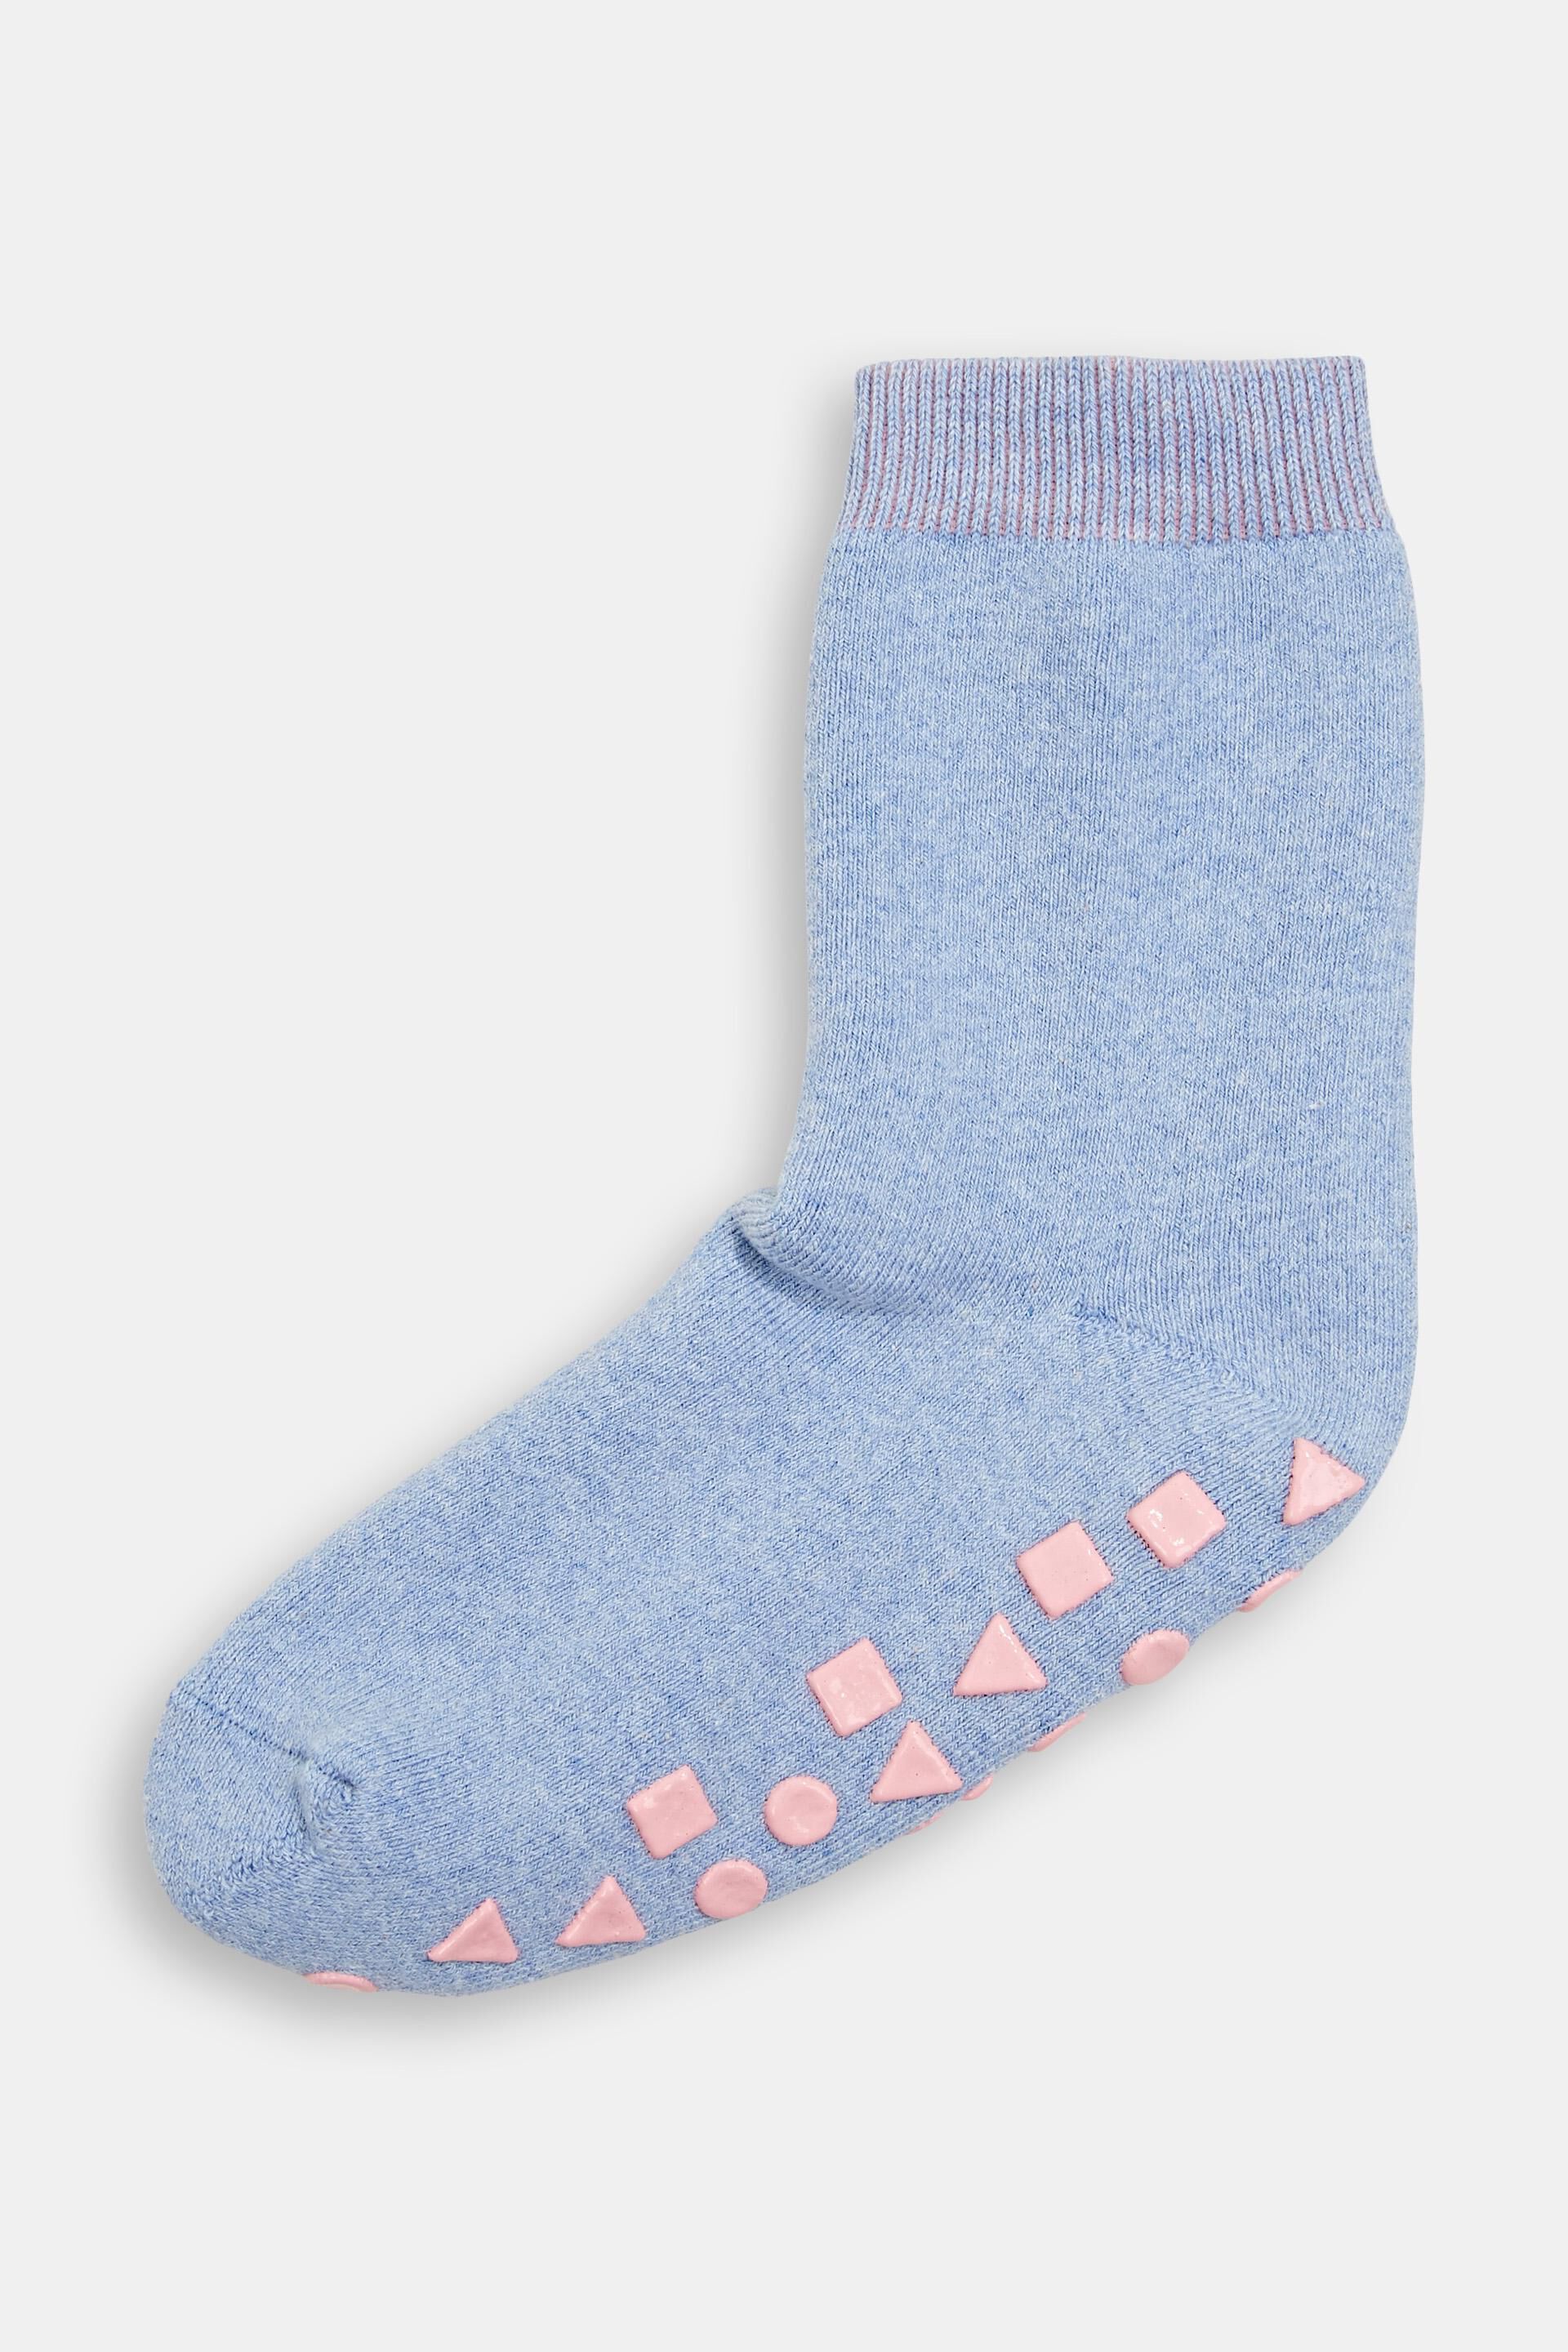 Esprit Non-slip blended of cotton made organic socks